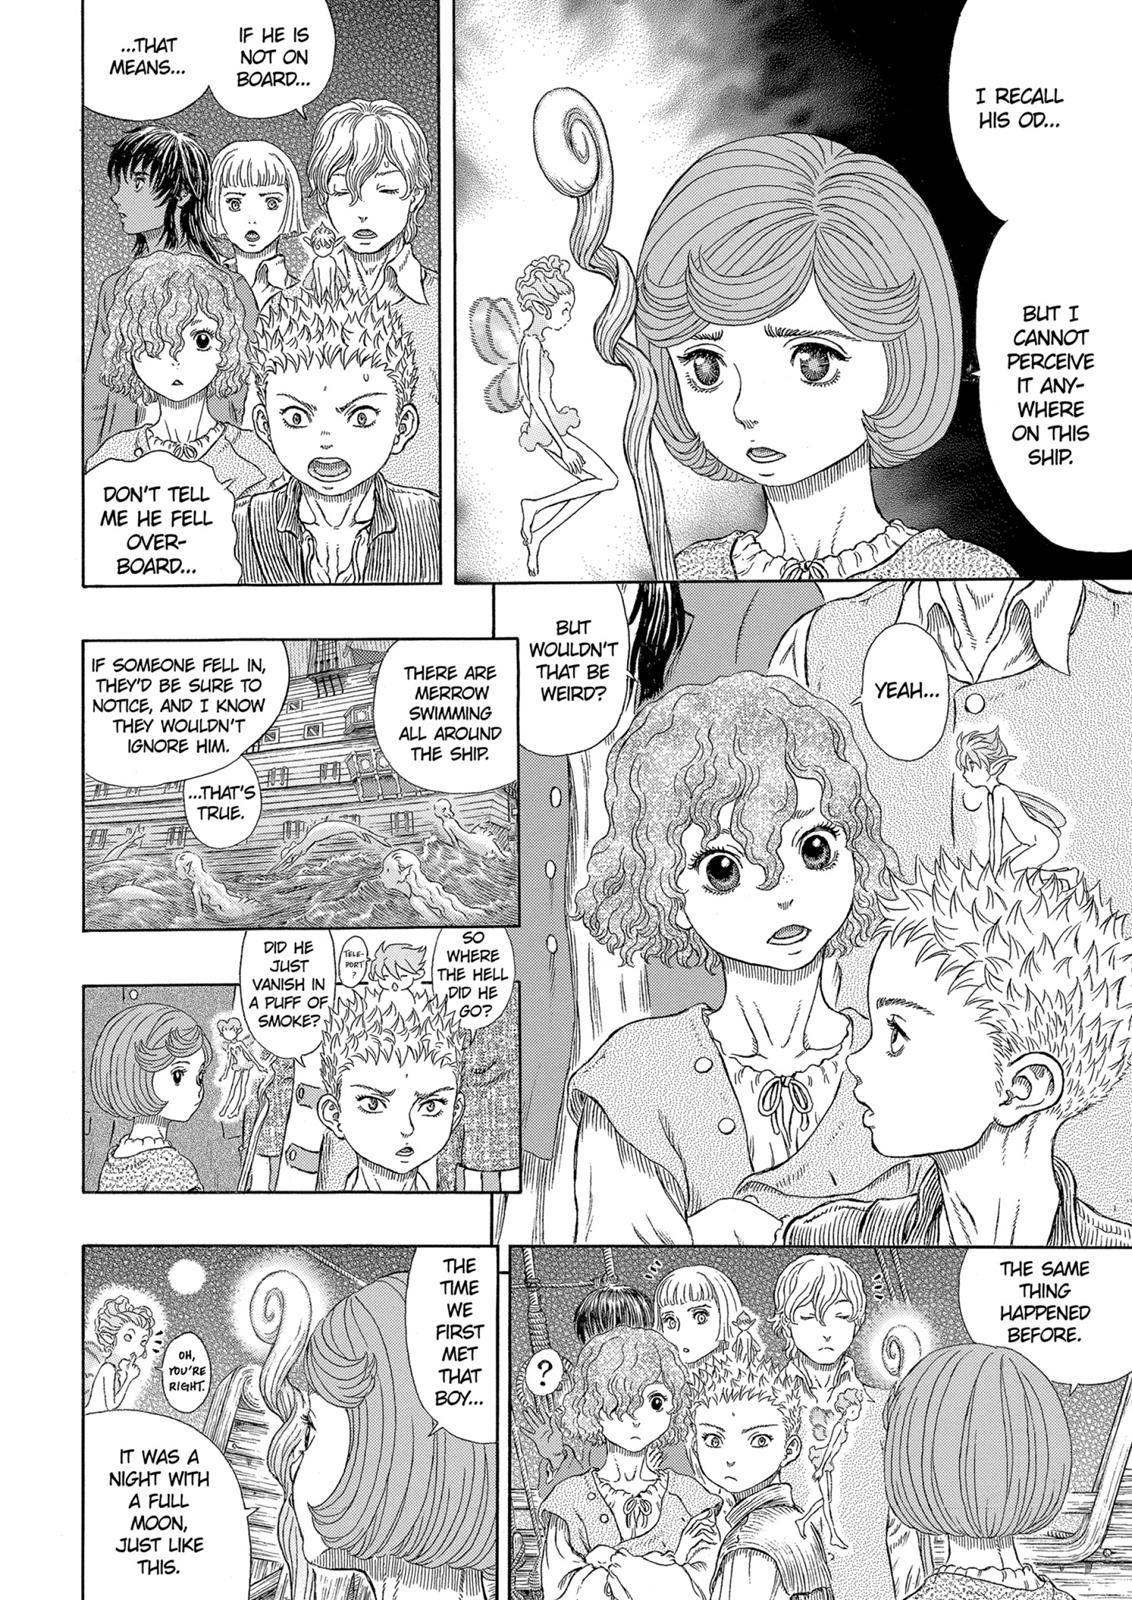 Berserk Manga Chapter 328 image 12